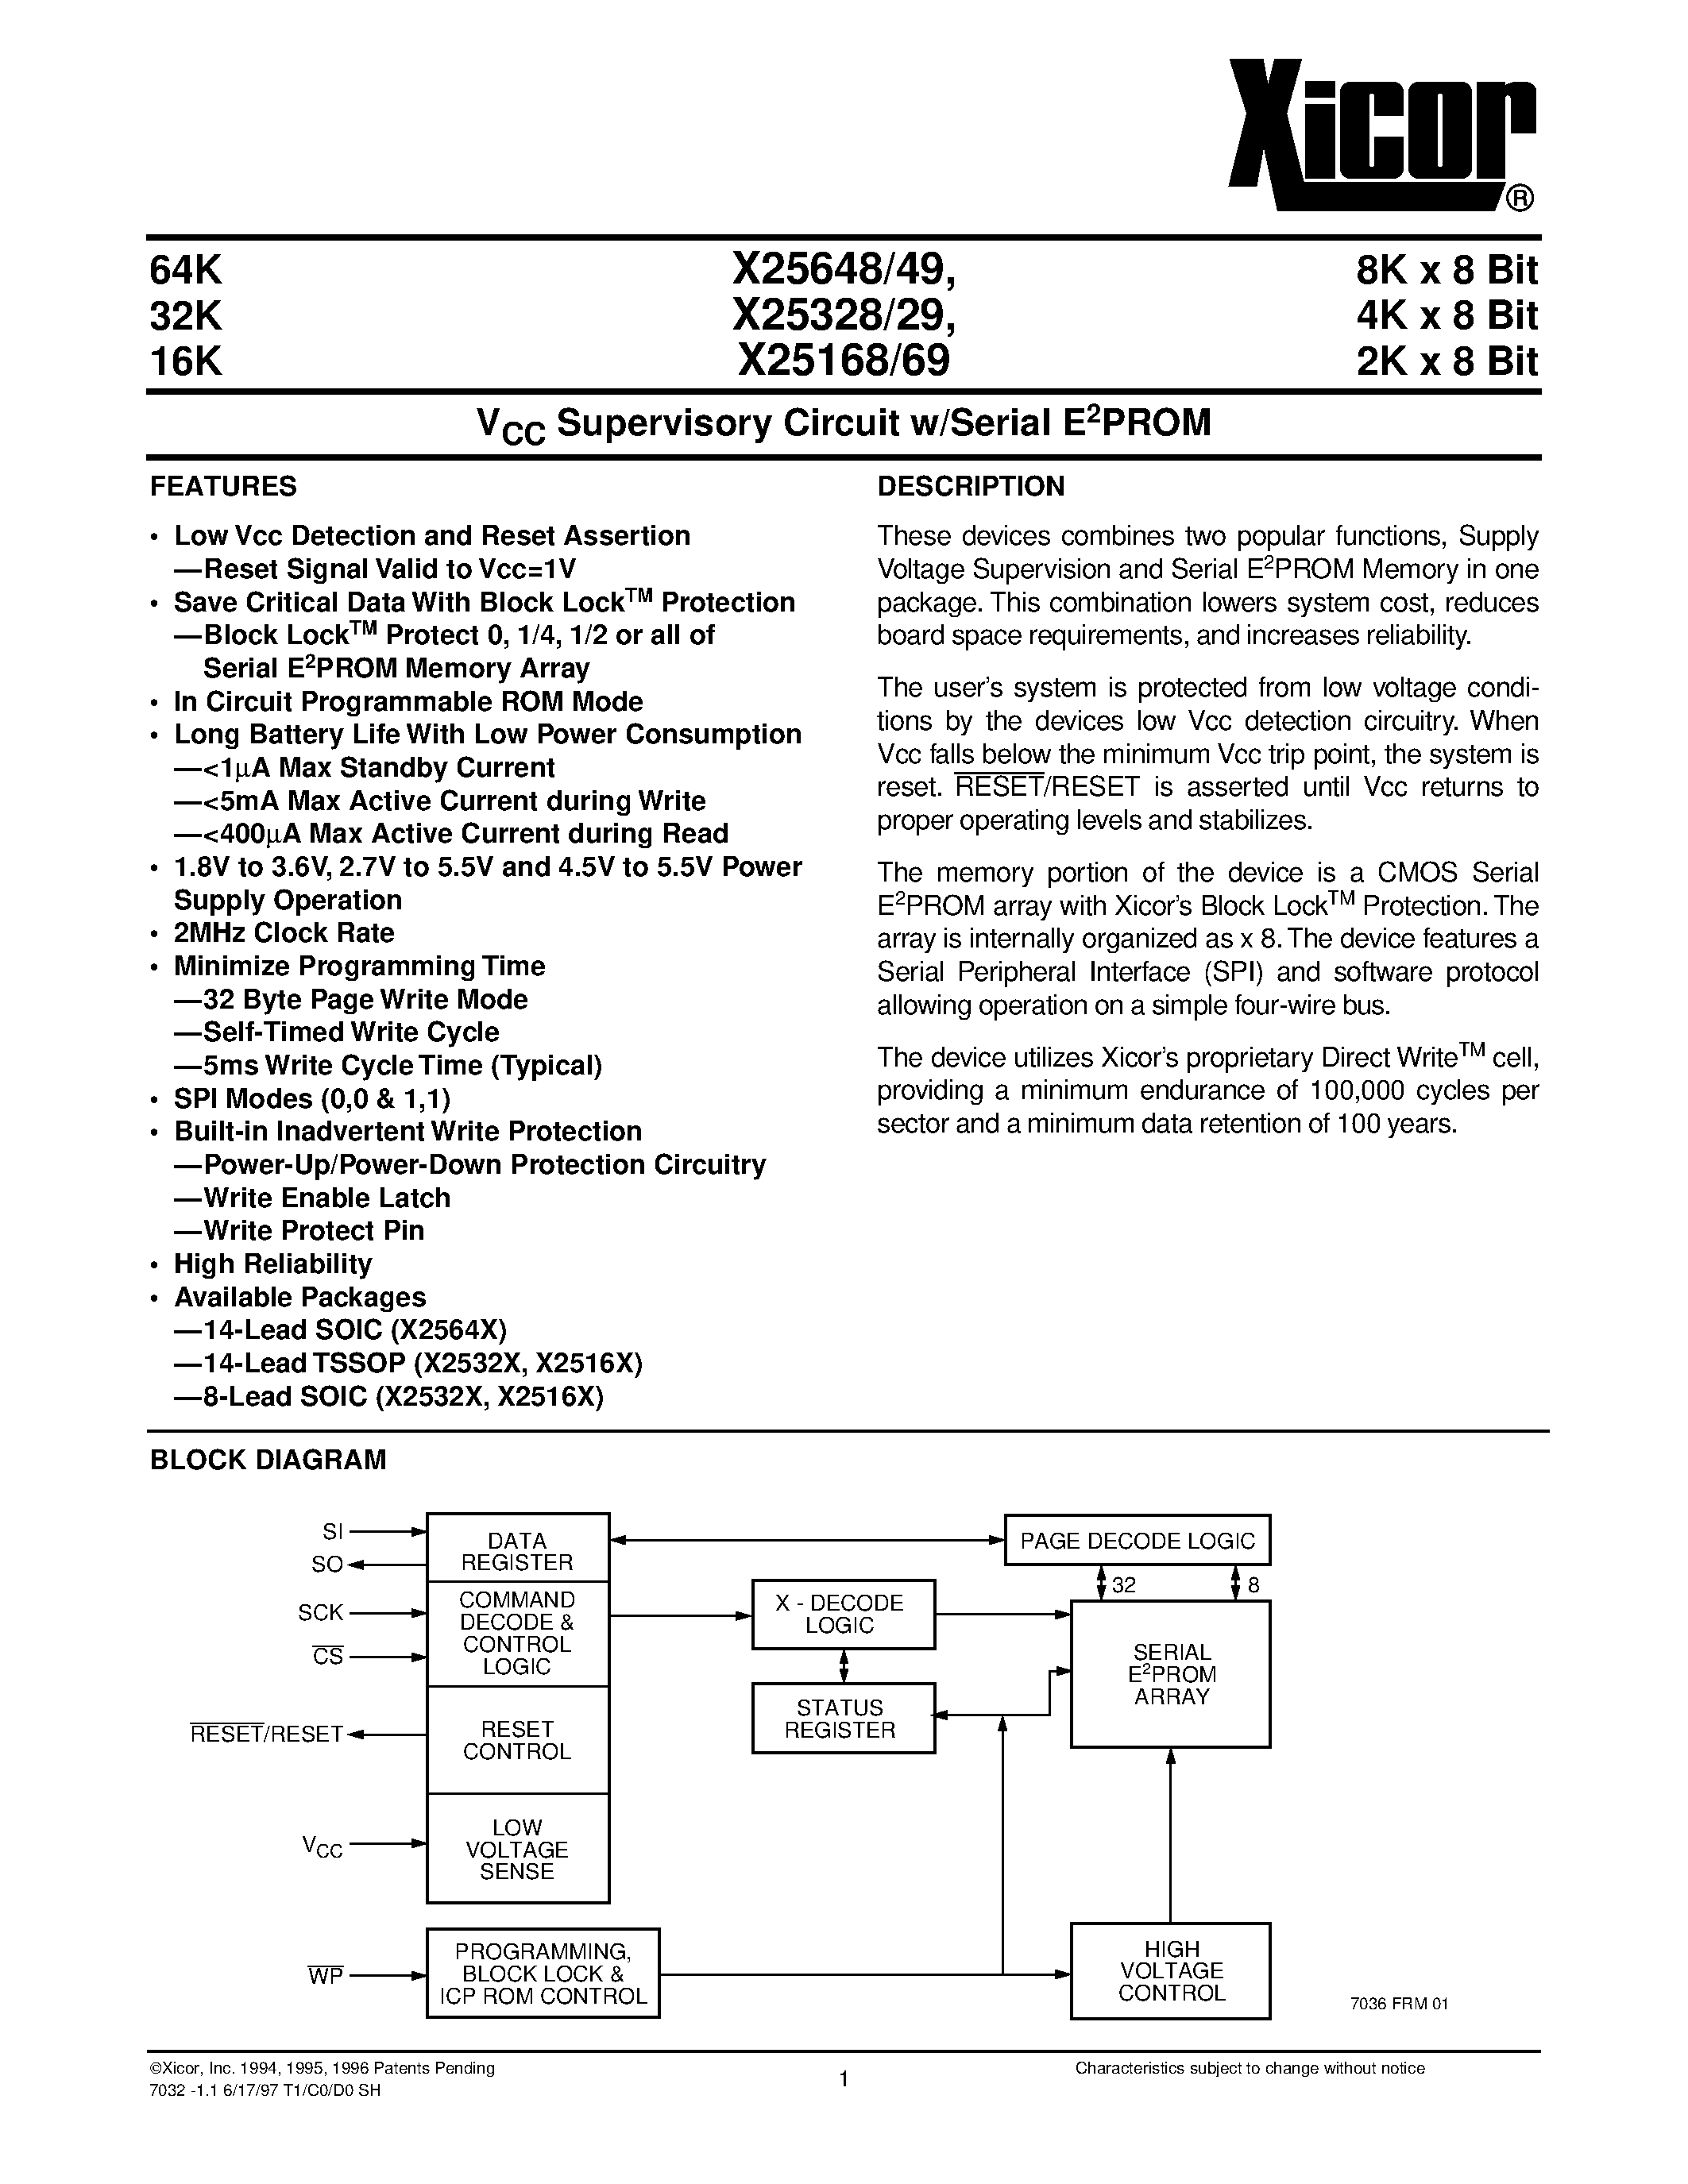 Даташит X25648S14 - V CC Supervisory Circuit w/Serial E 2 PROM страница 1